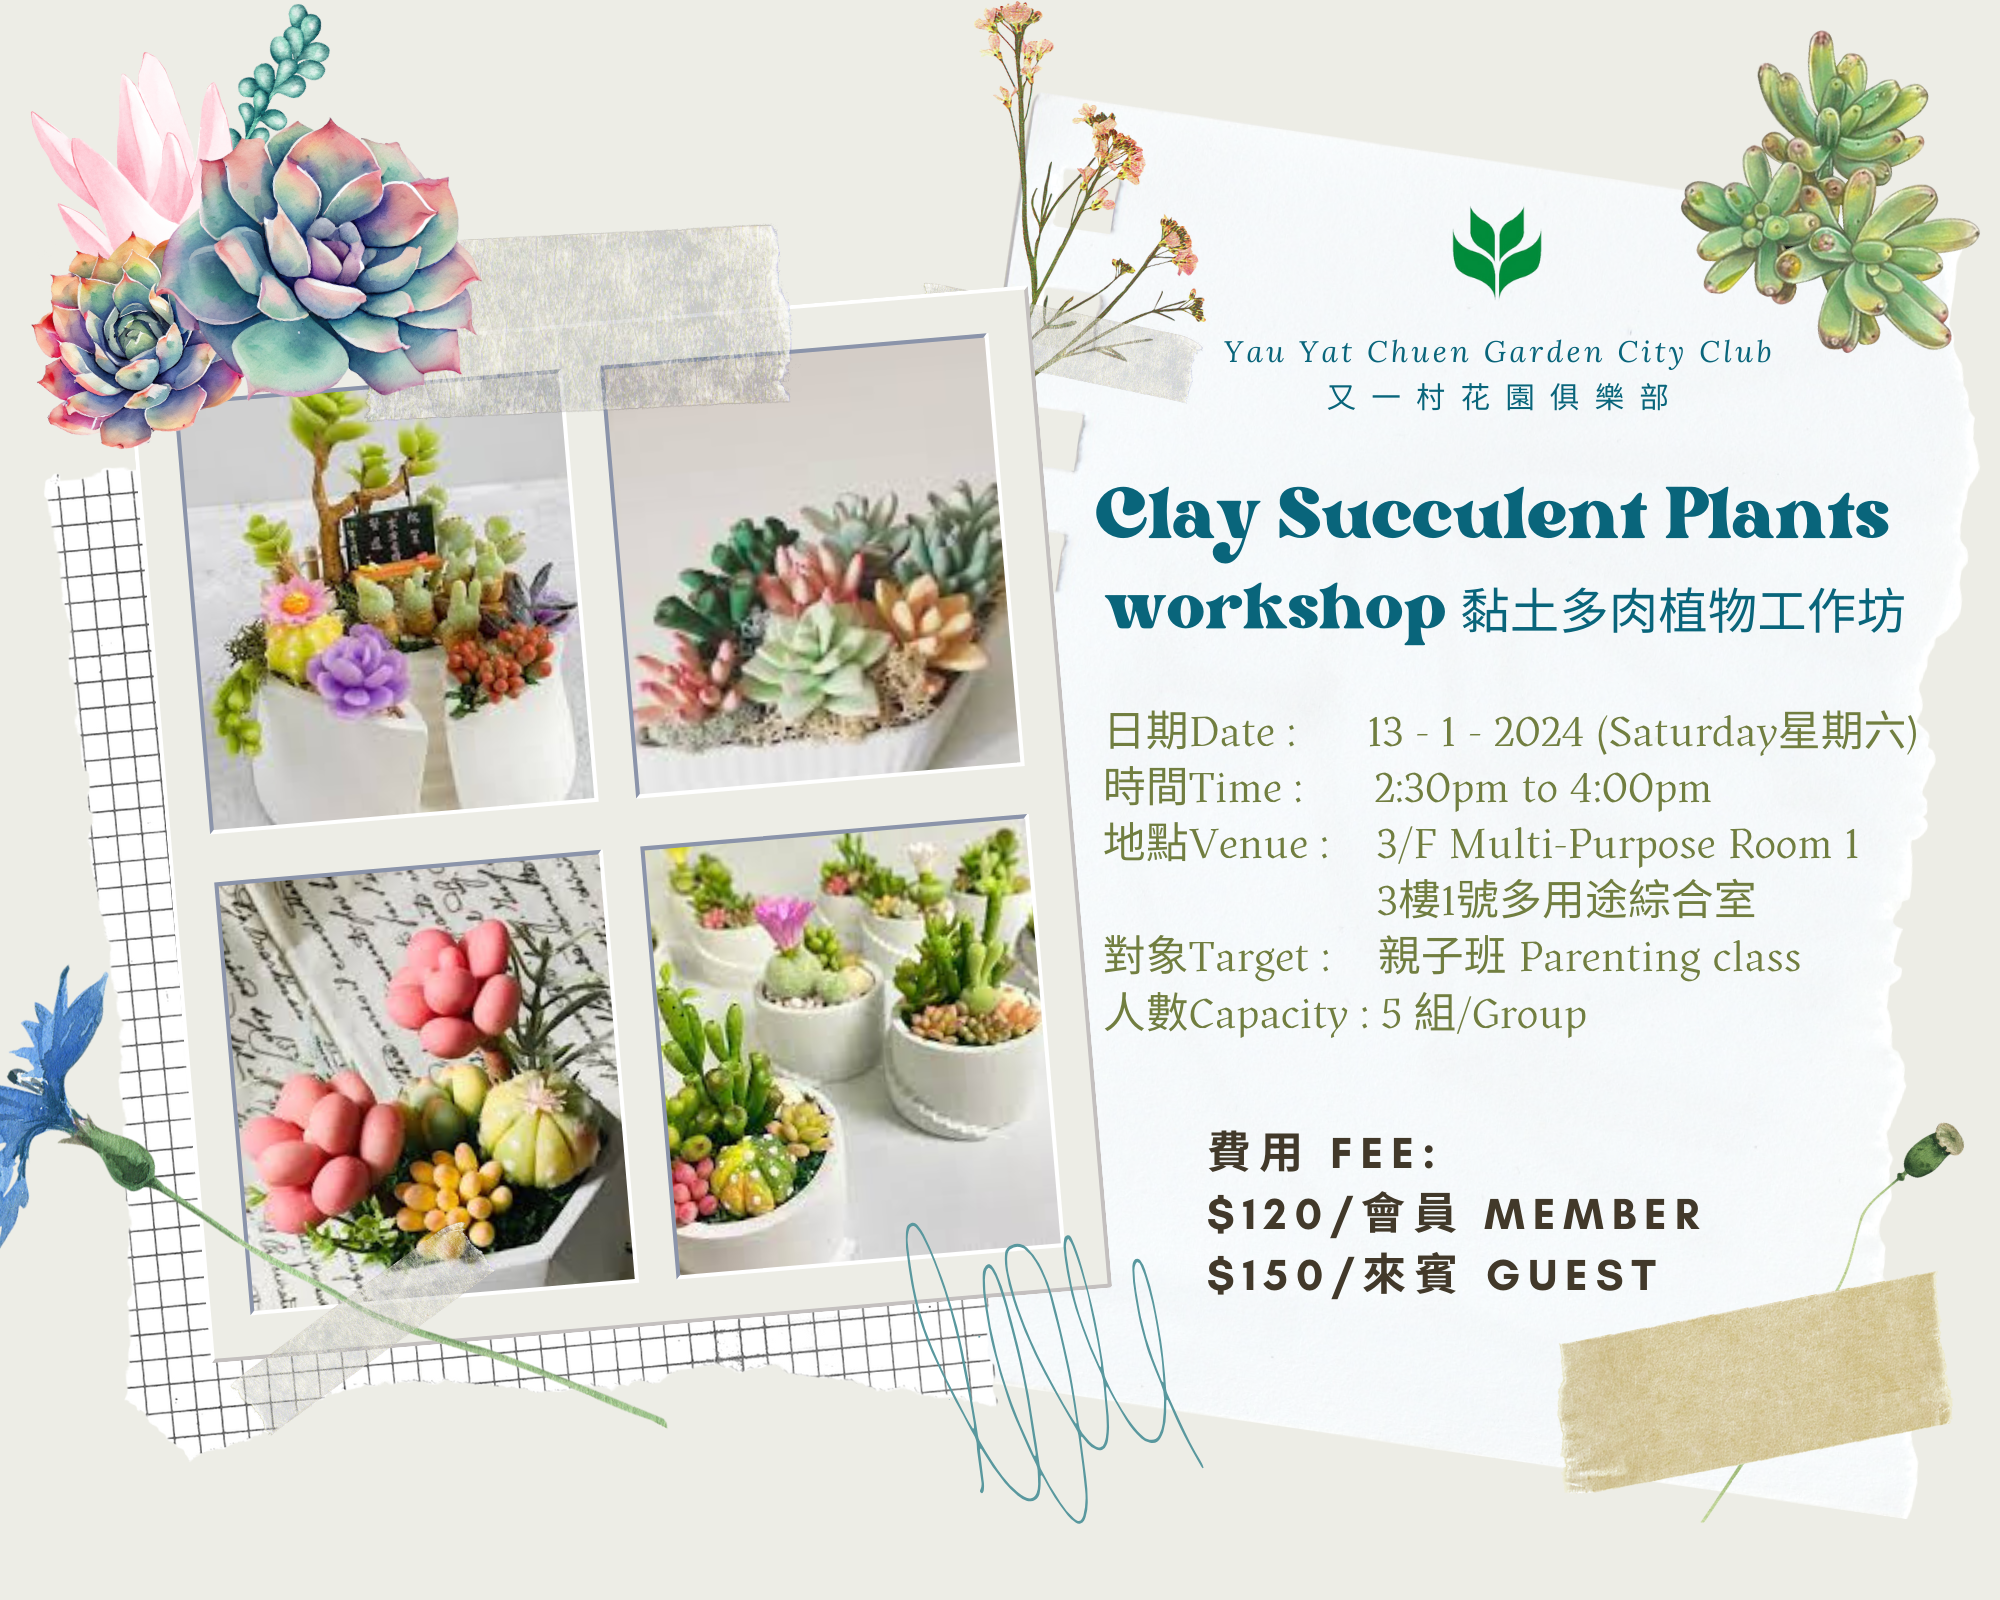 Clay Succulent Plants workshop